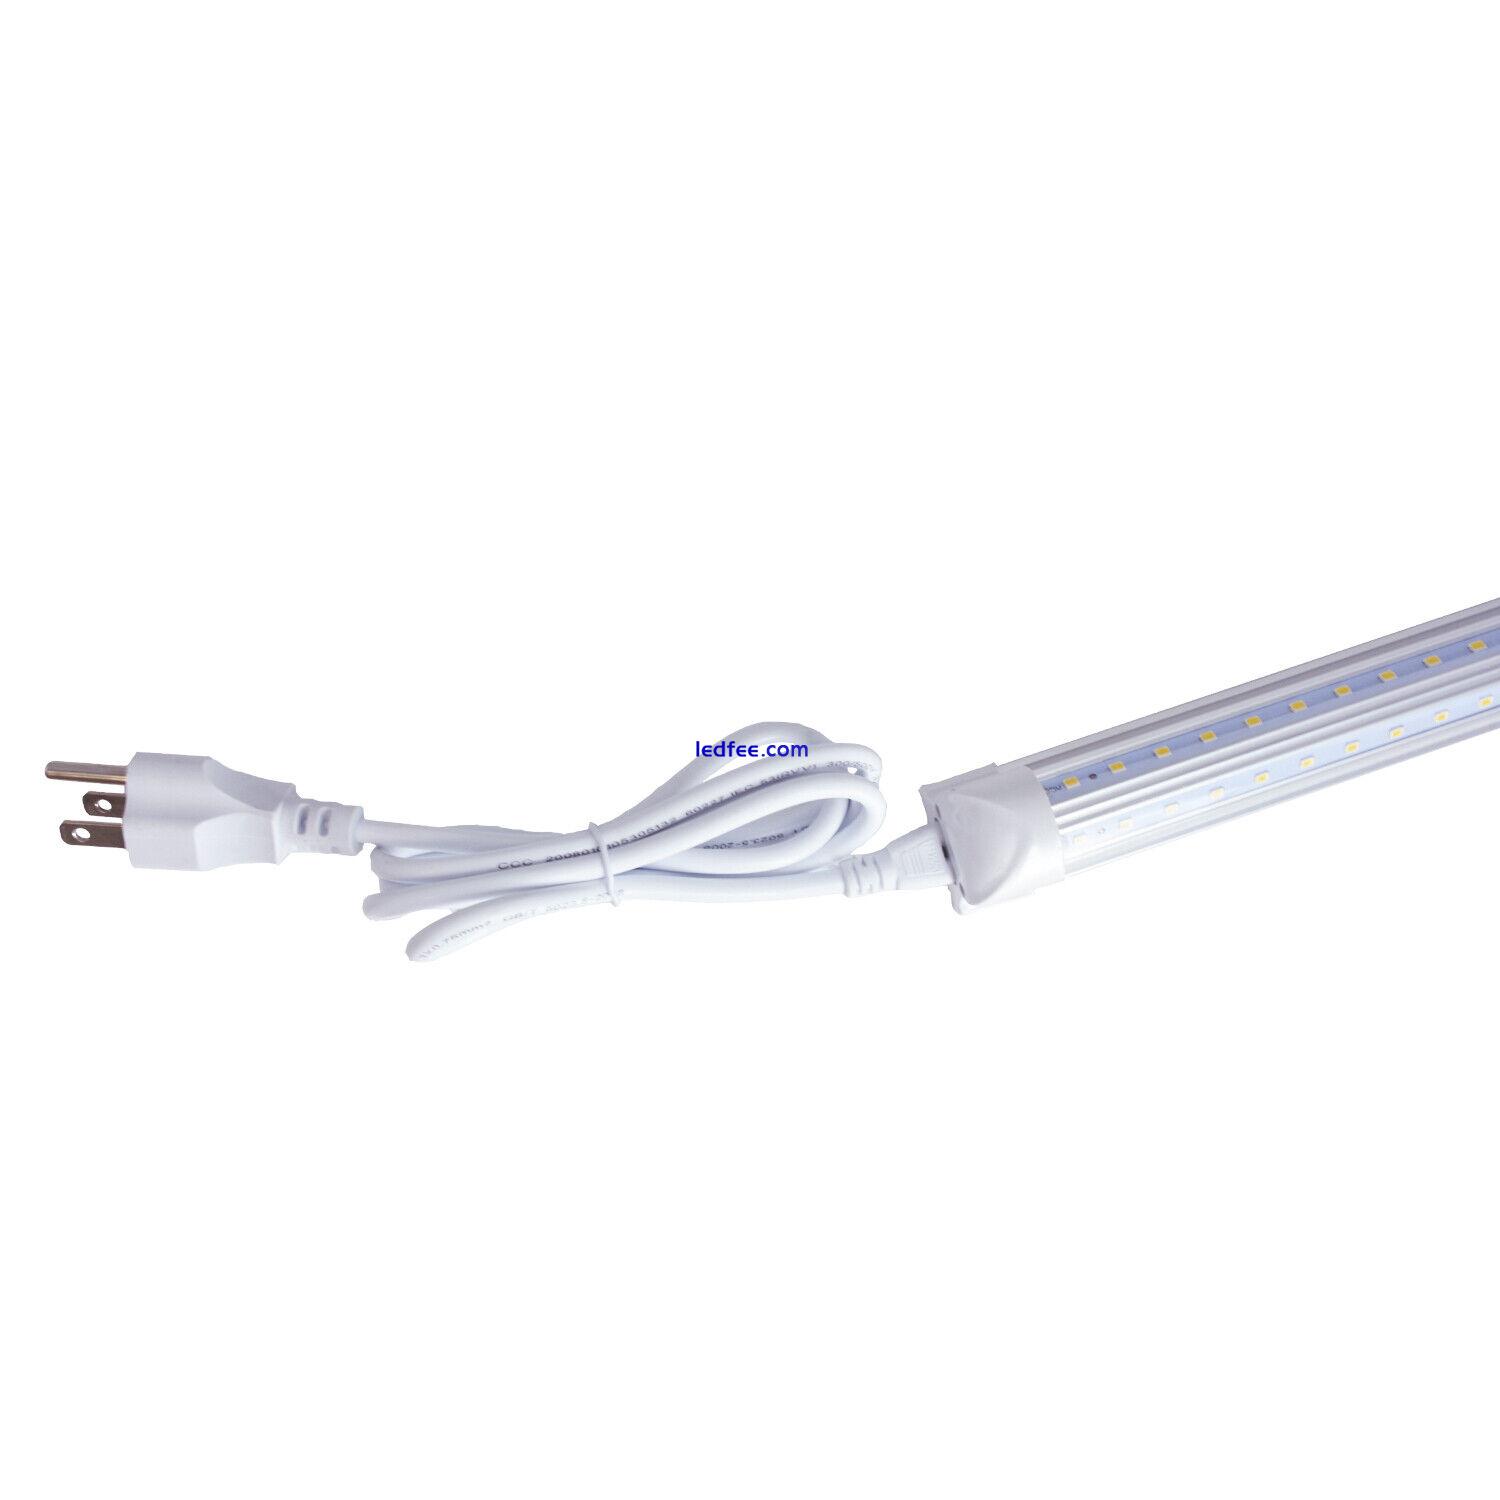 US Power Cables T5 T8 LED Tube Light 2FT 4FT 3-Pin Plug Cord 3 